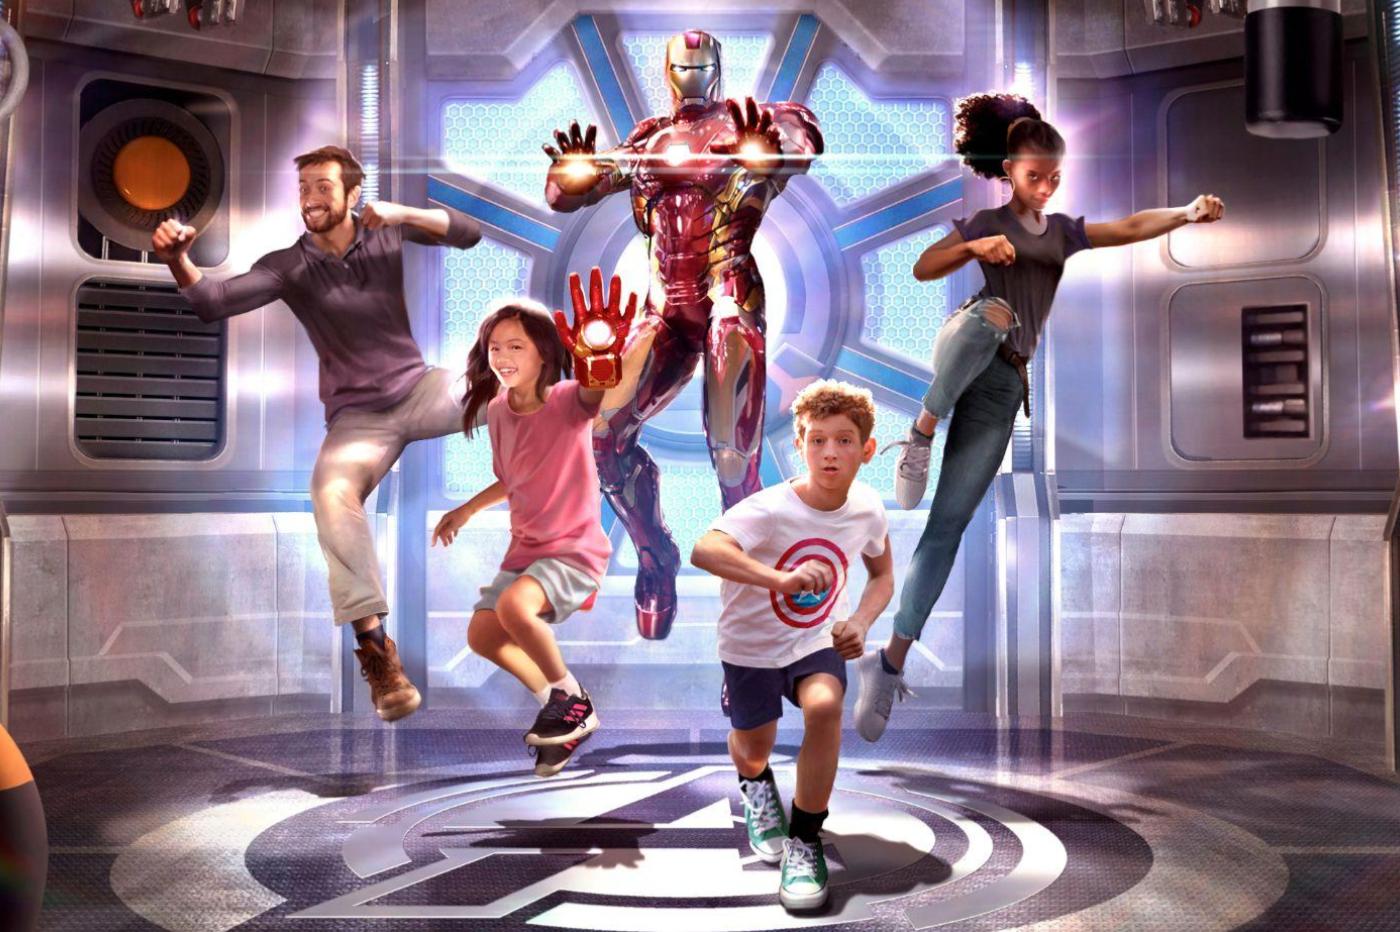 Image promotionnelle du point de rencontre avec Iron Man